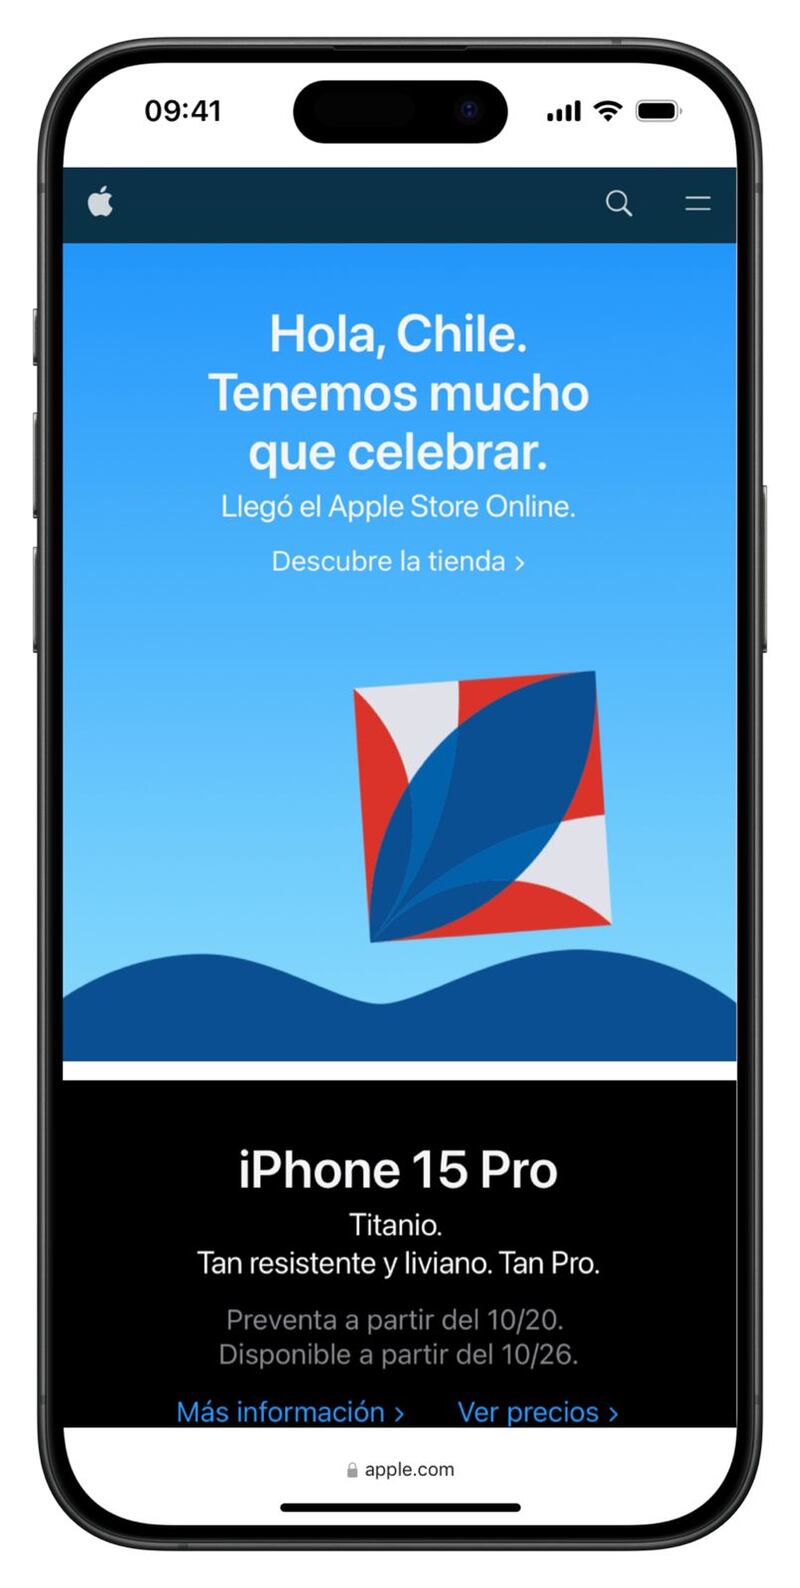 Nueva tienda Apple Store Online en Chile